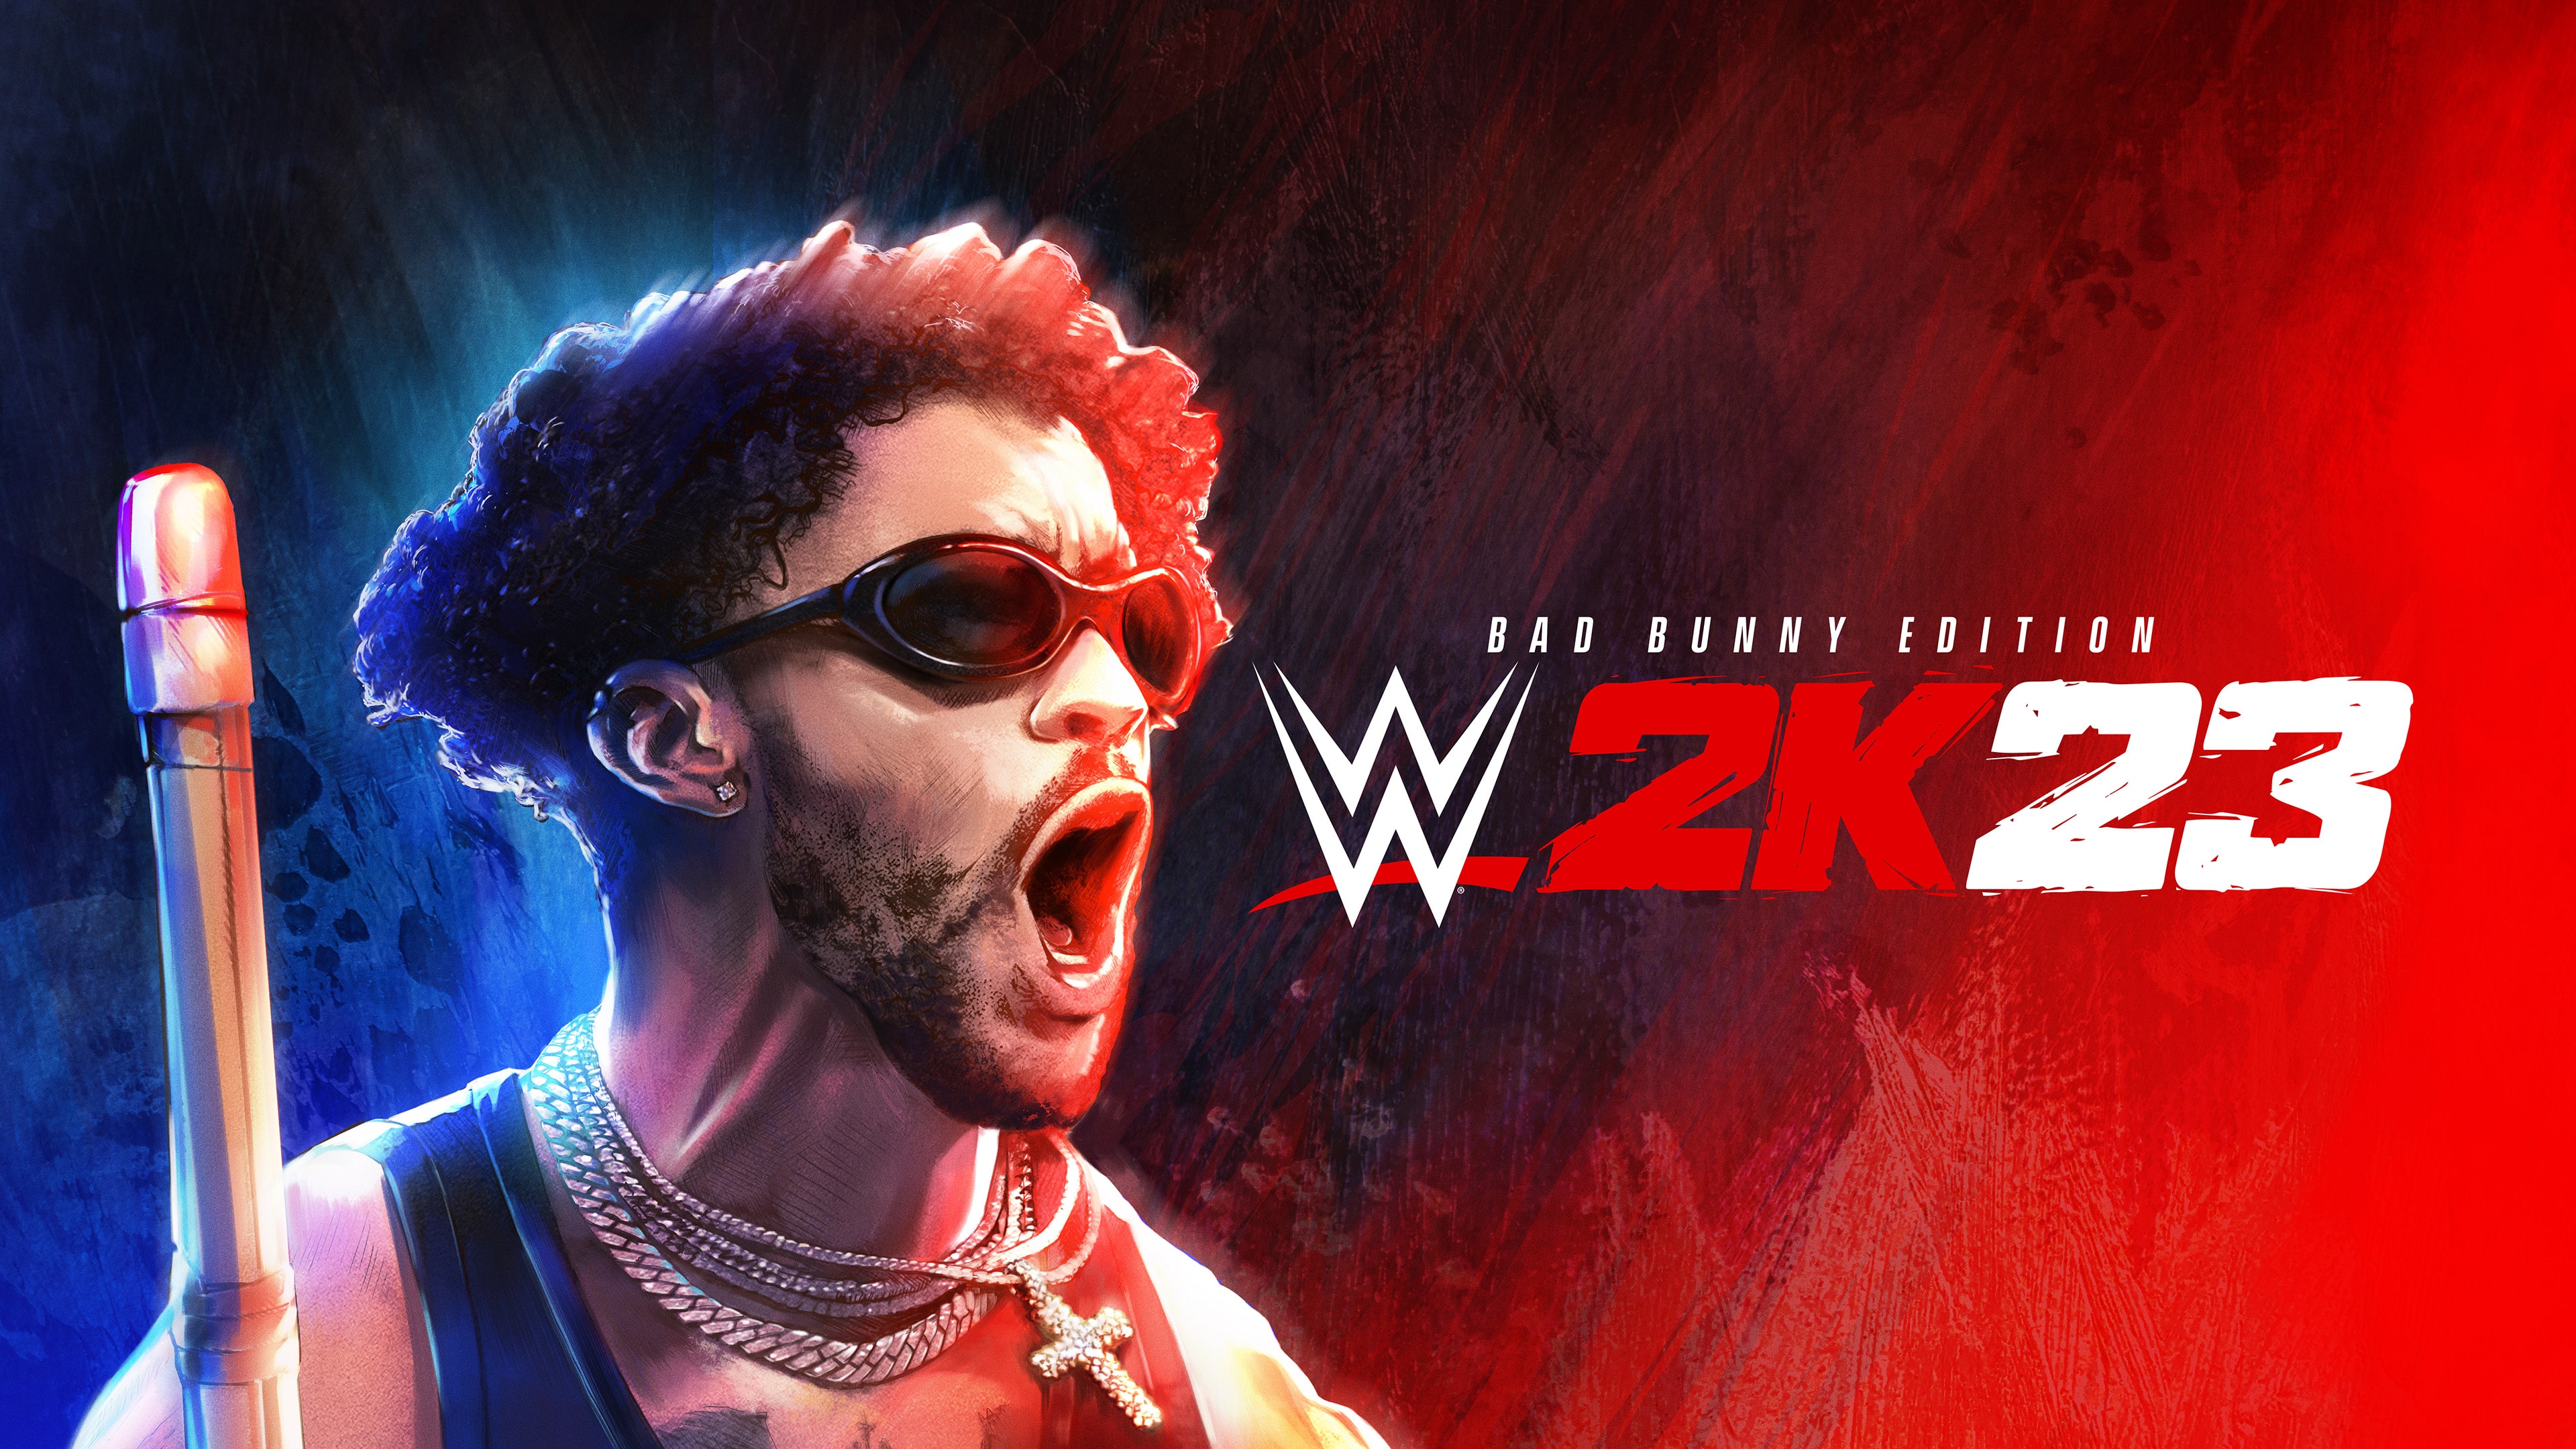 WWE 2K23 Bad Bunny-udgaven